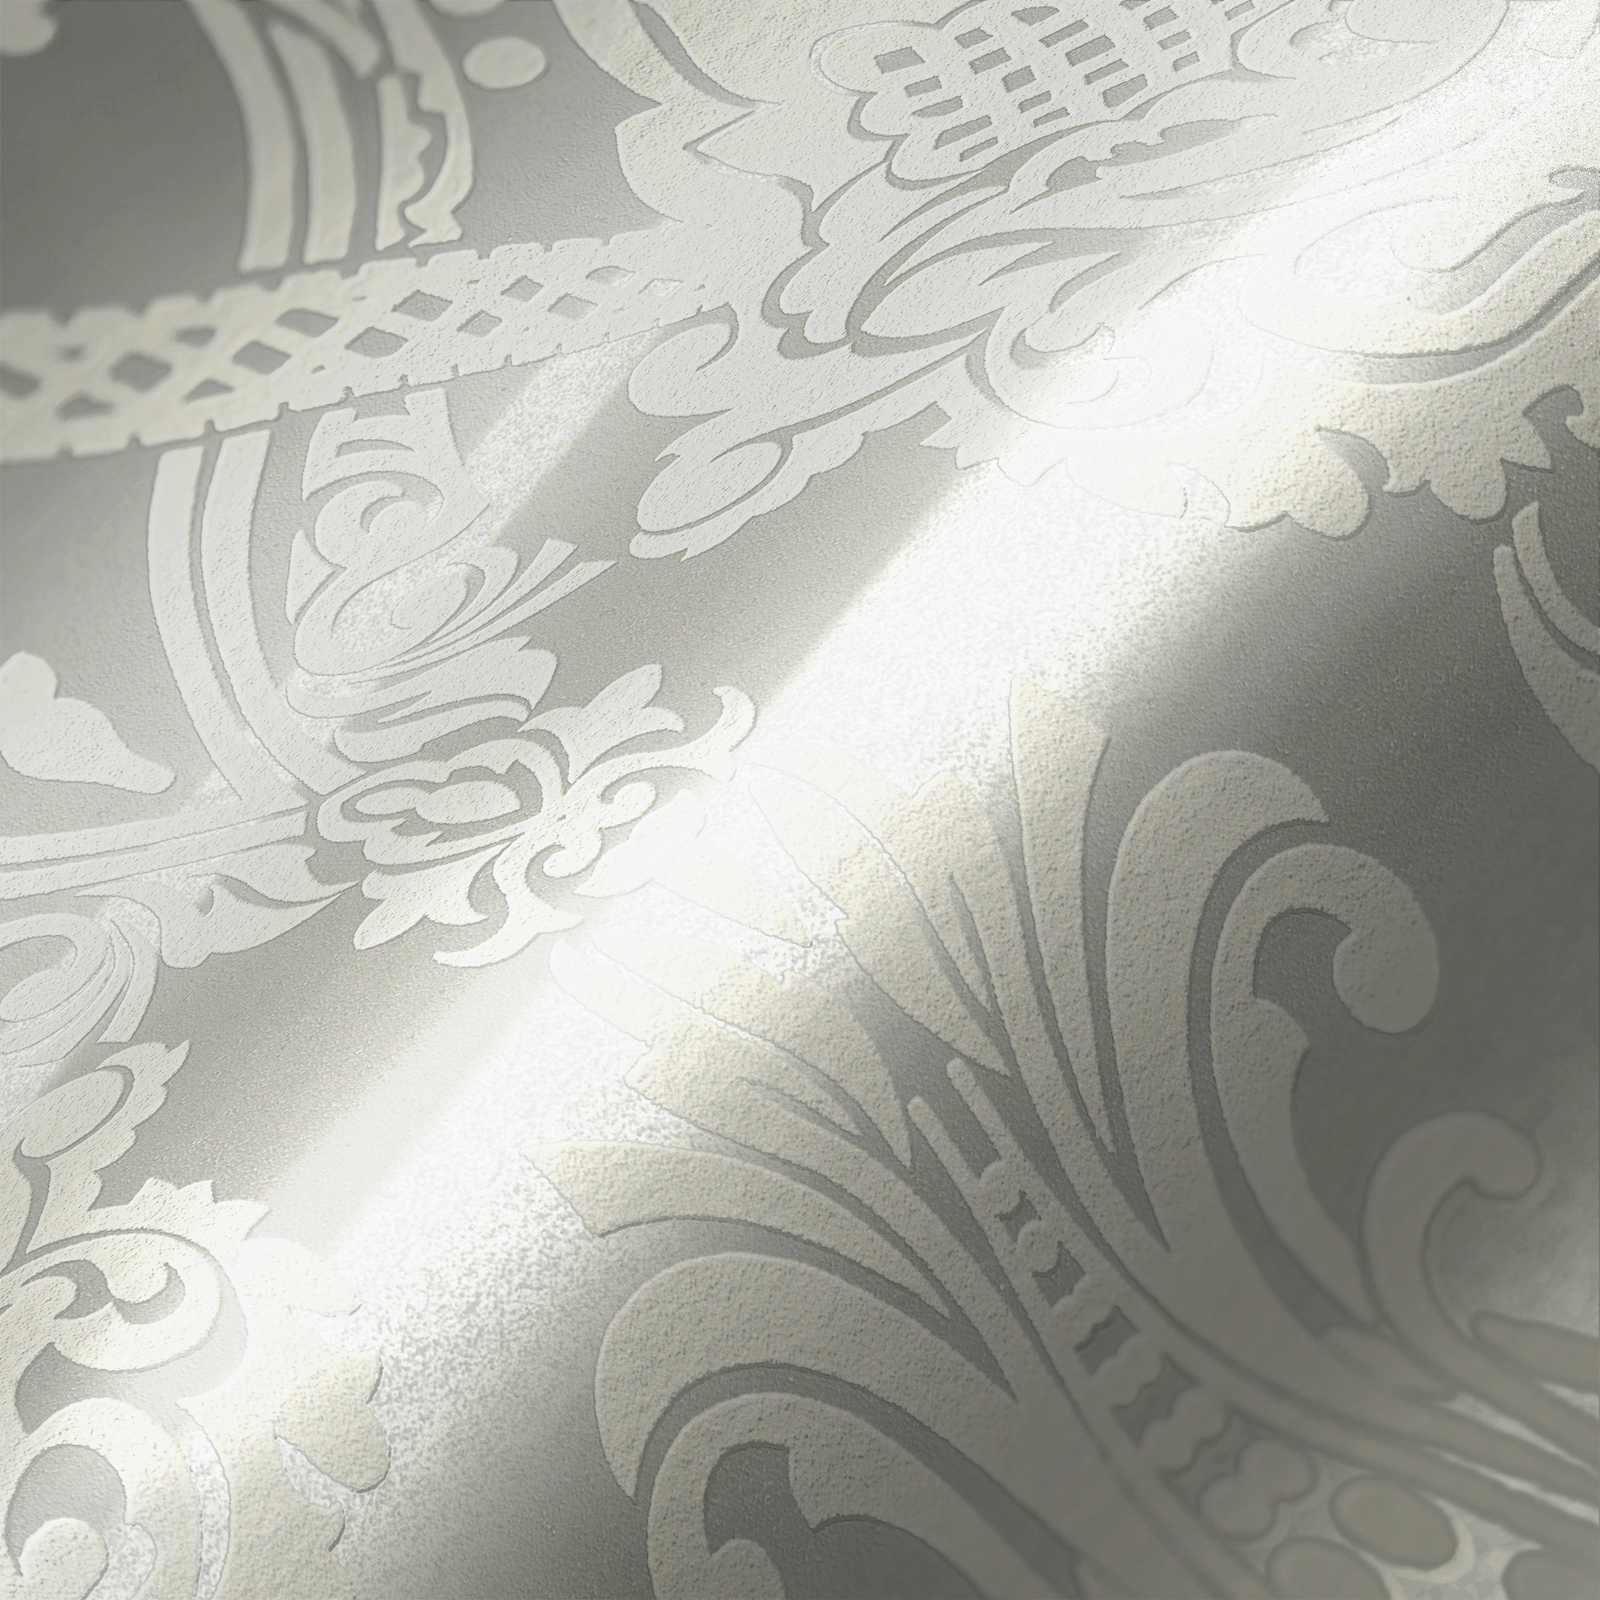             Wit behang barok design met metallic effect
        